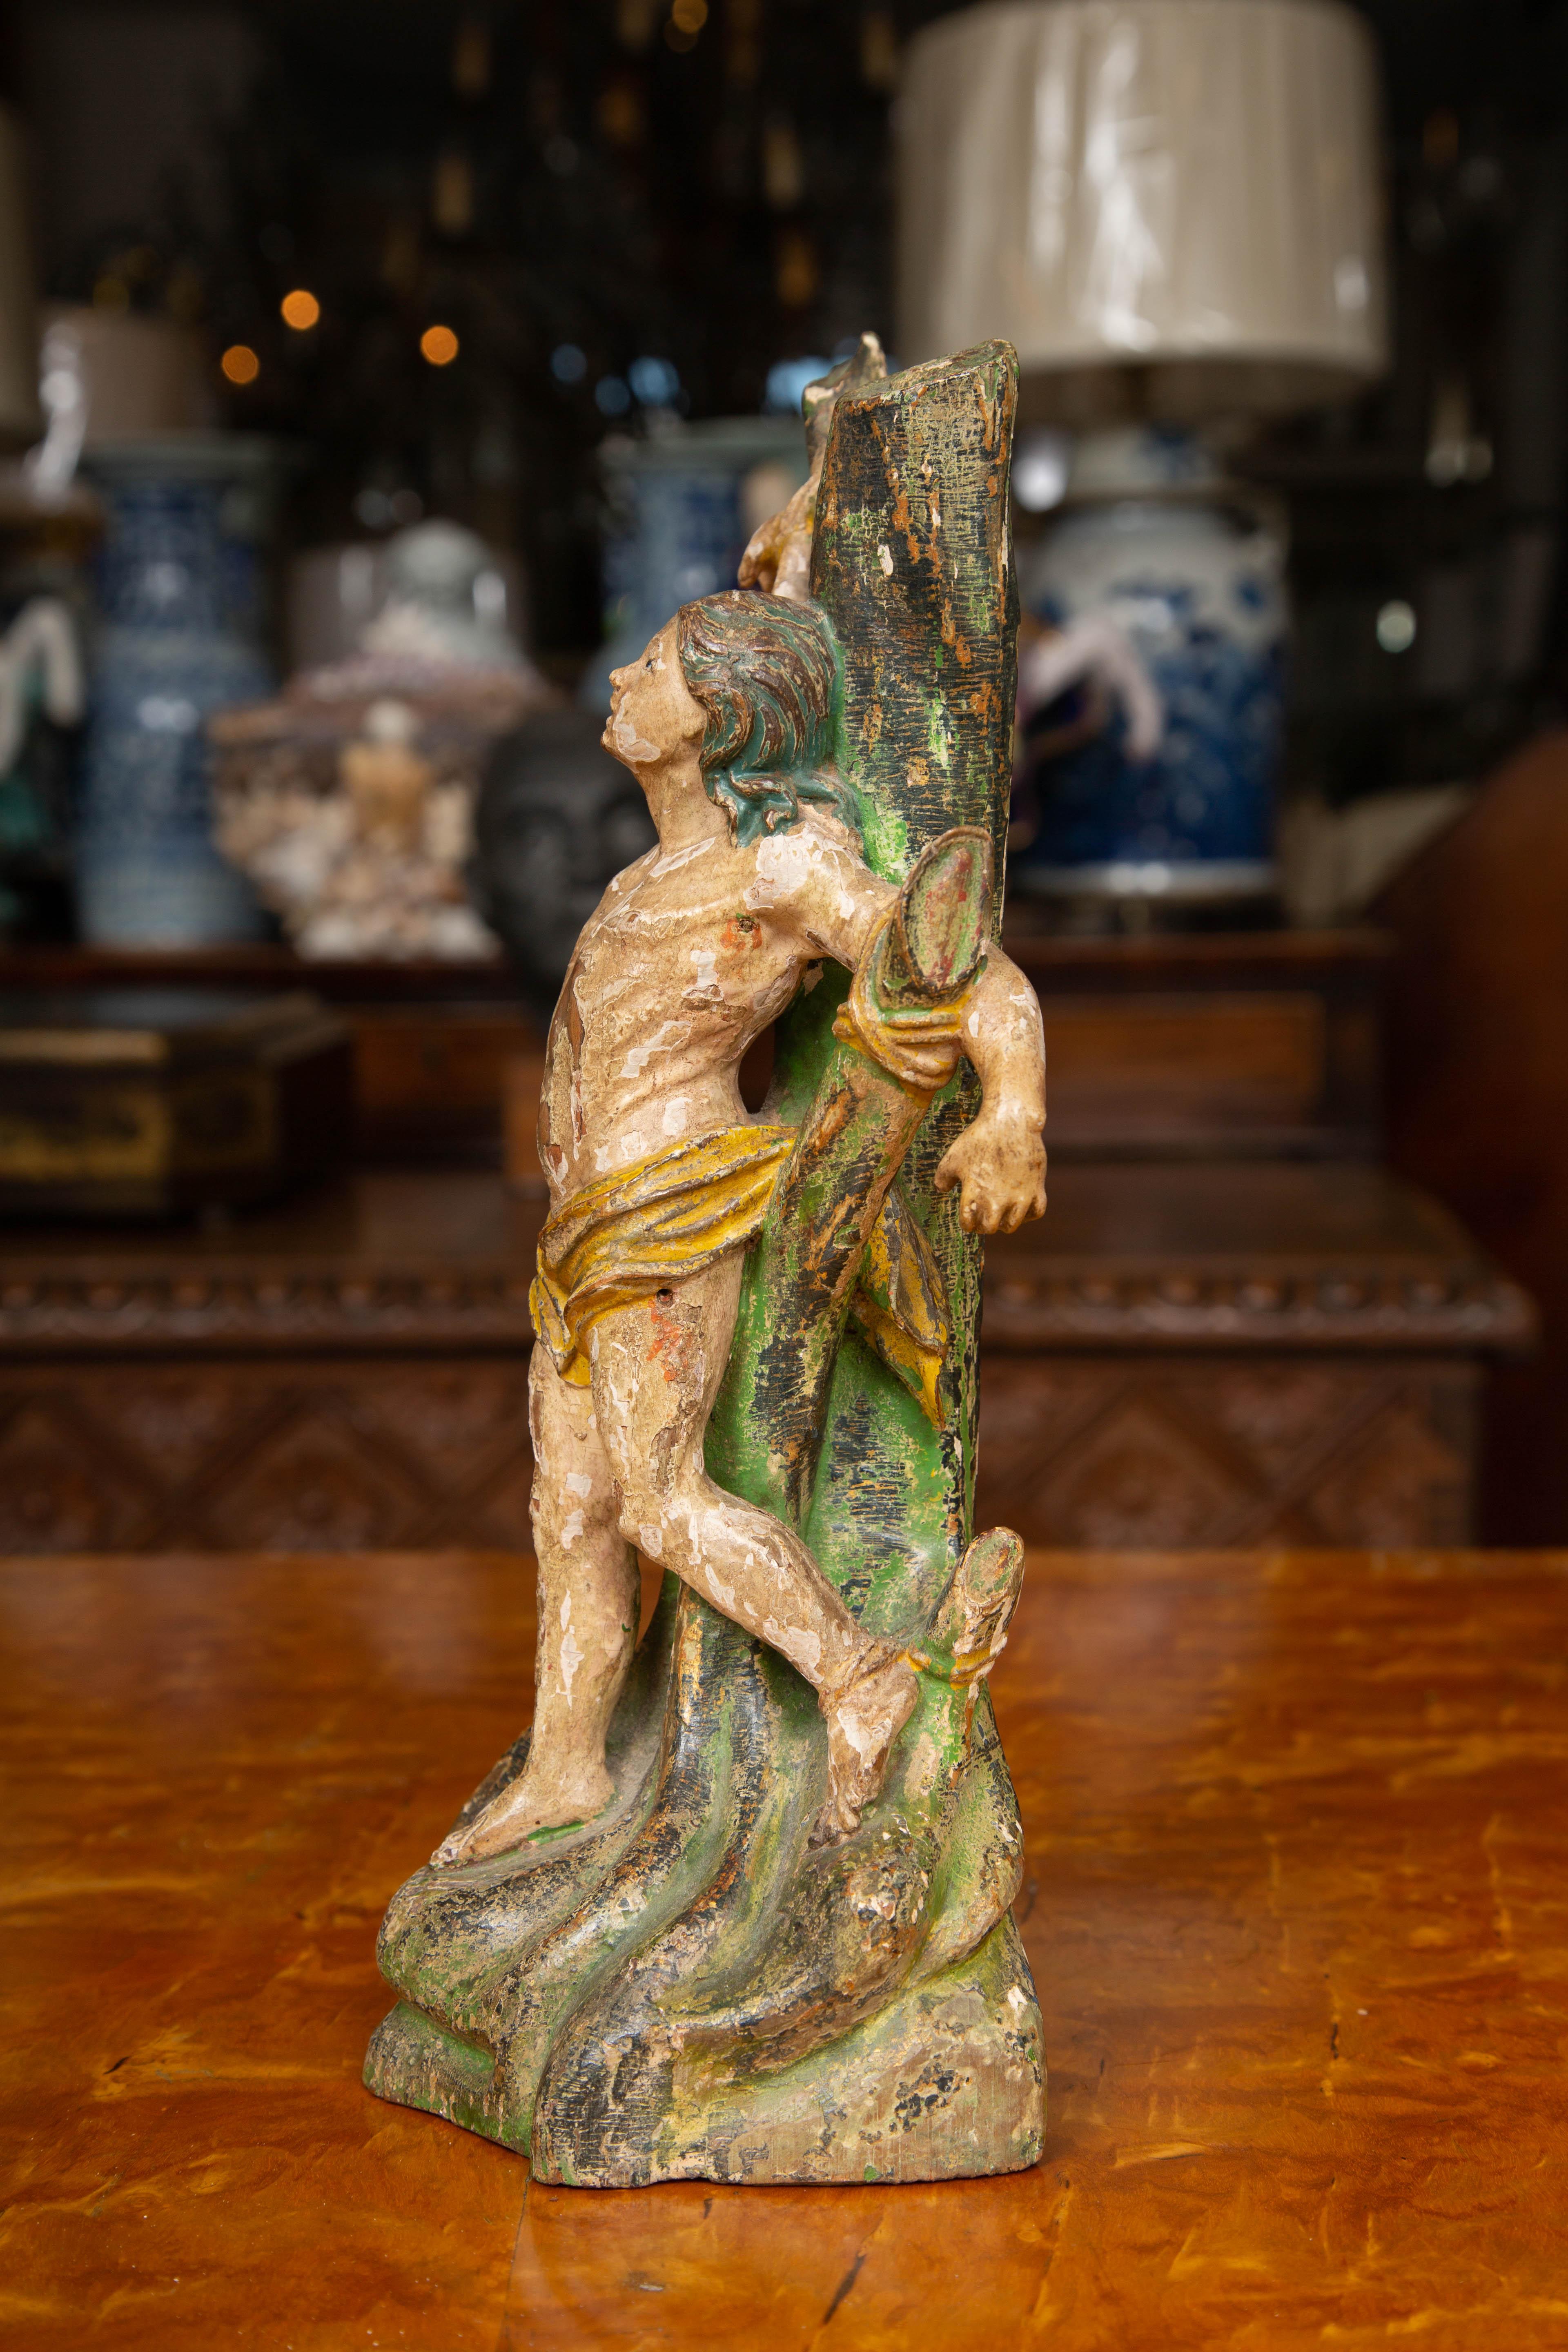 Dies ist eine klassische handgeschnitzte Figur des heiligen Sabastian, der während einer versuchten Verfolgung an einen Baum gefesselt ist. Er soll von der heiligen Irene von Rom gerettet und geheilt worden sein. Er wird sowohl in der